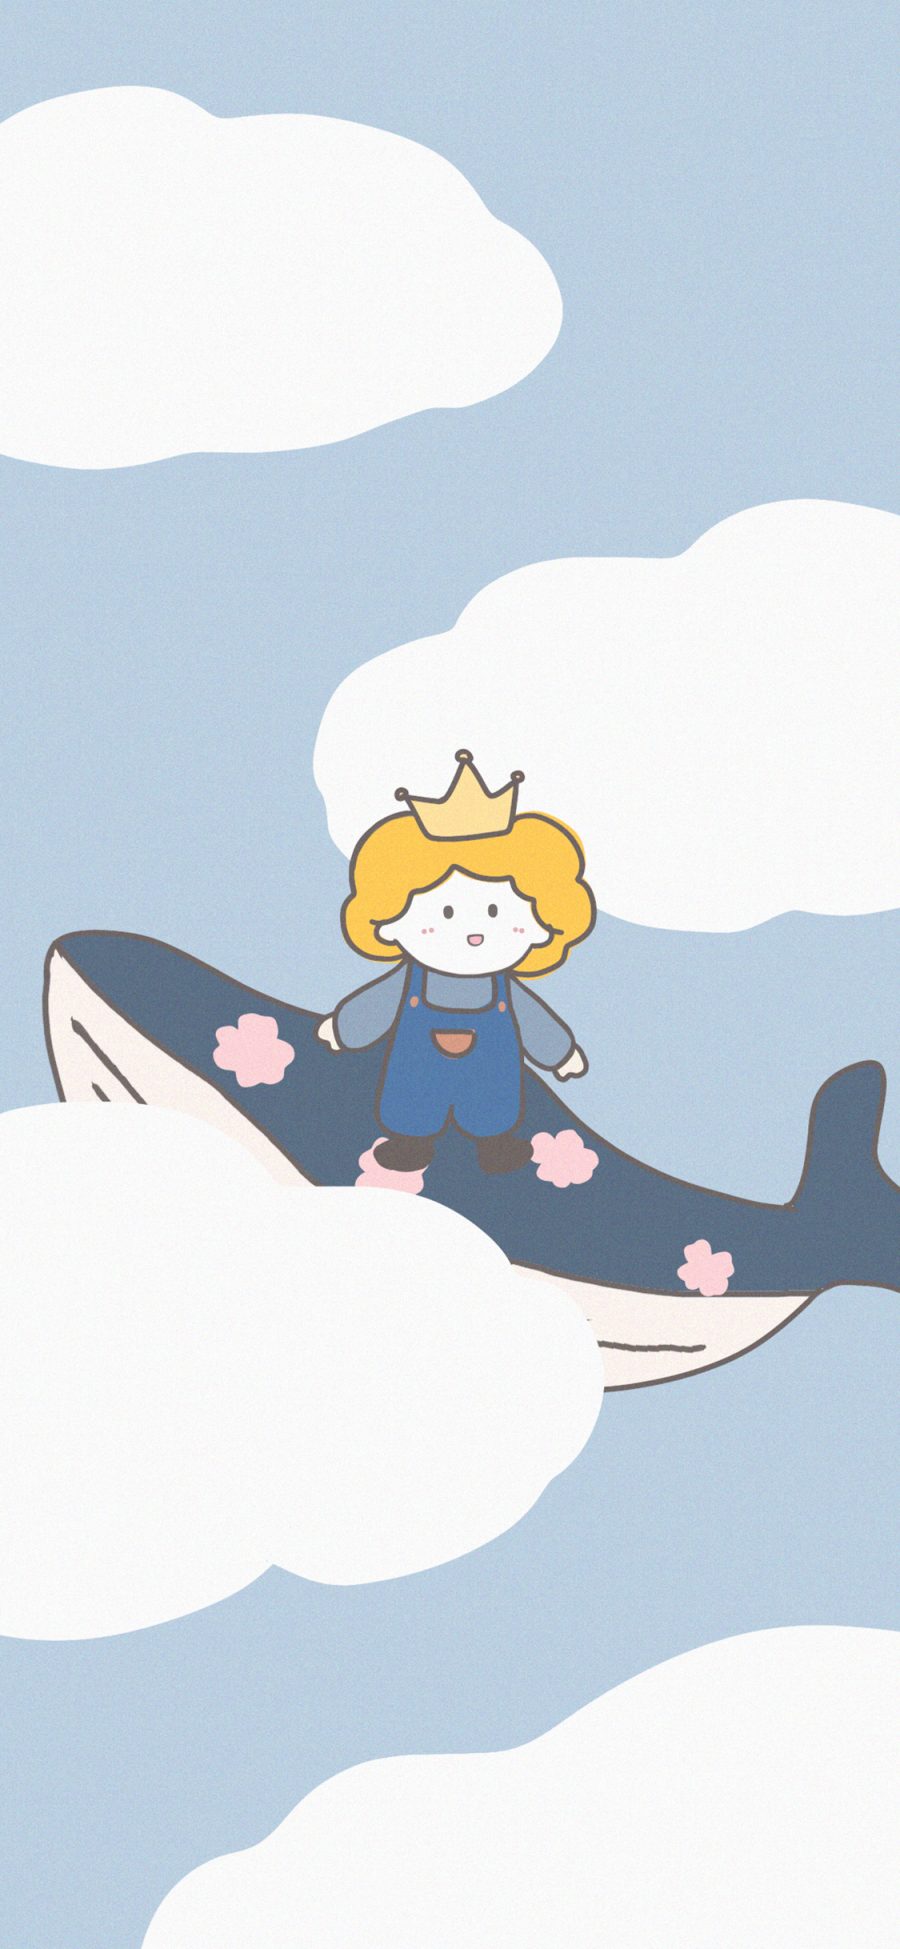 [2436×1125]可爱 卡通 小王子 鲸鱼 苹果手机动漫壁纸图片